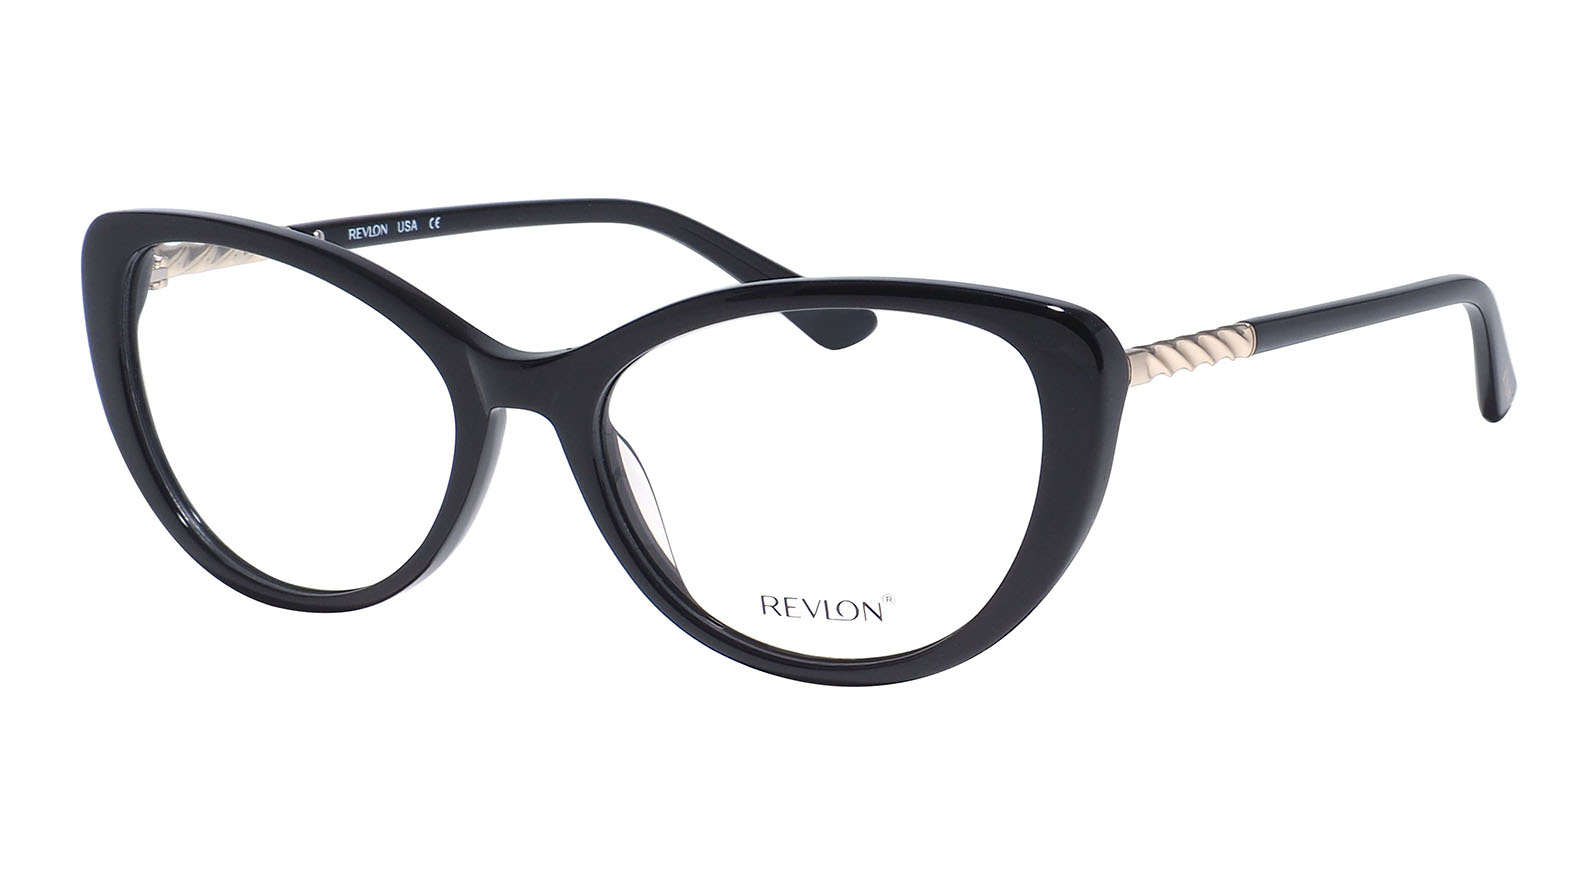 Revlon 1847 07 очки корригирующие 4гр линза cr 39 окр в массе мужские